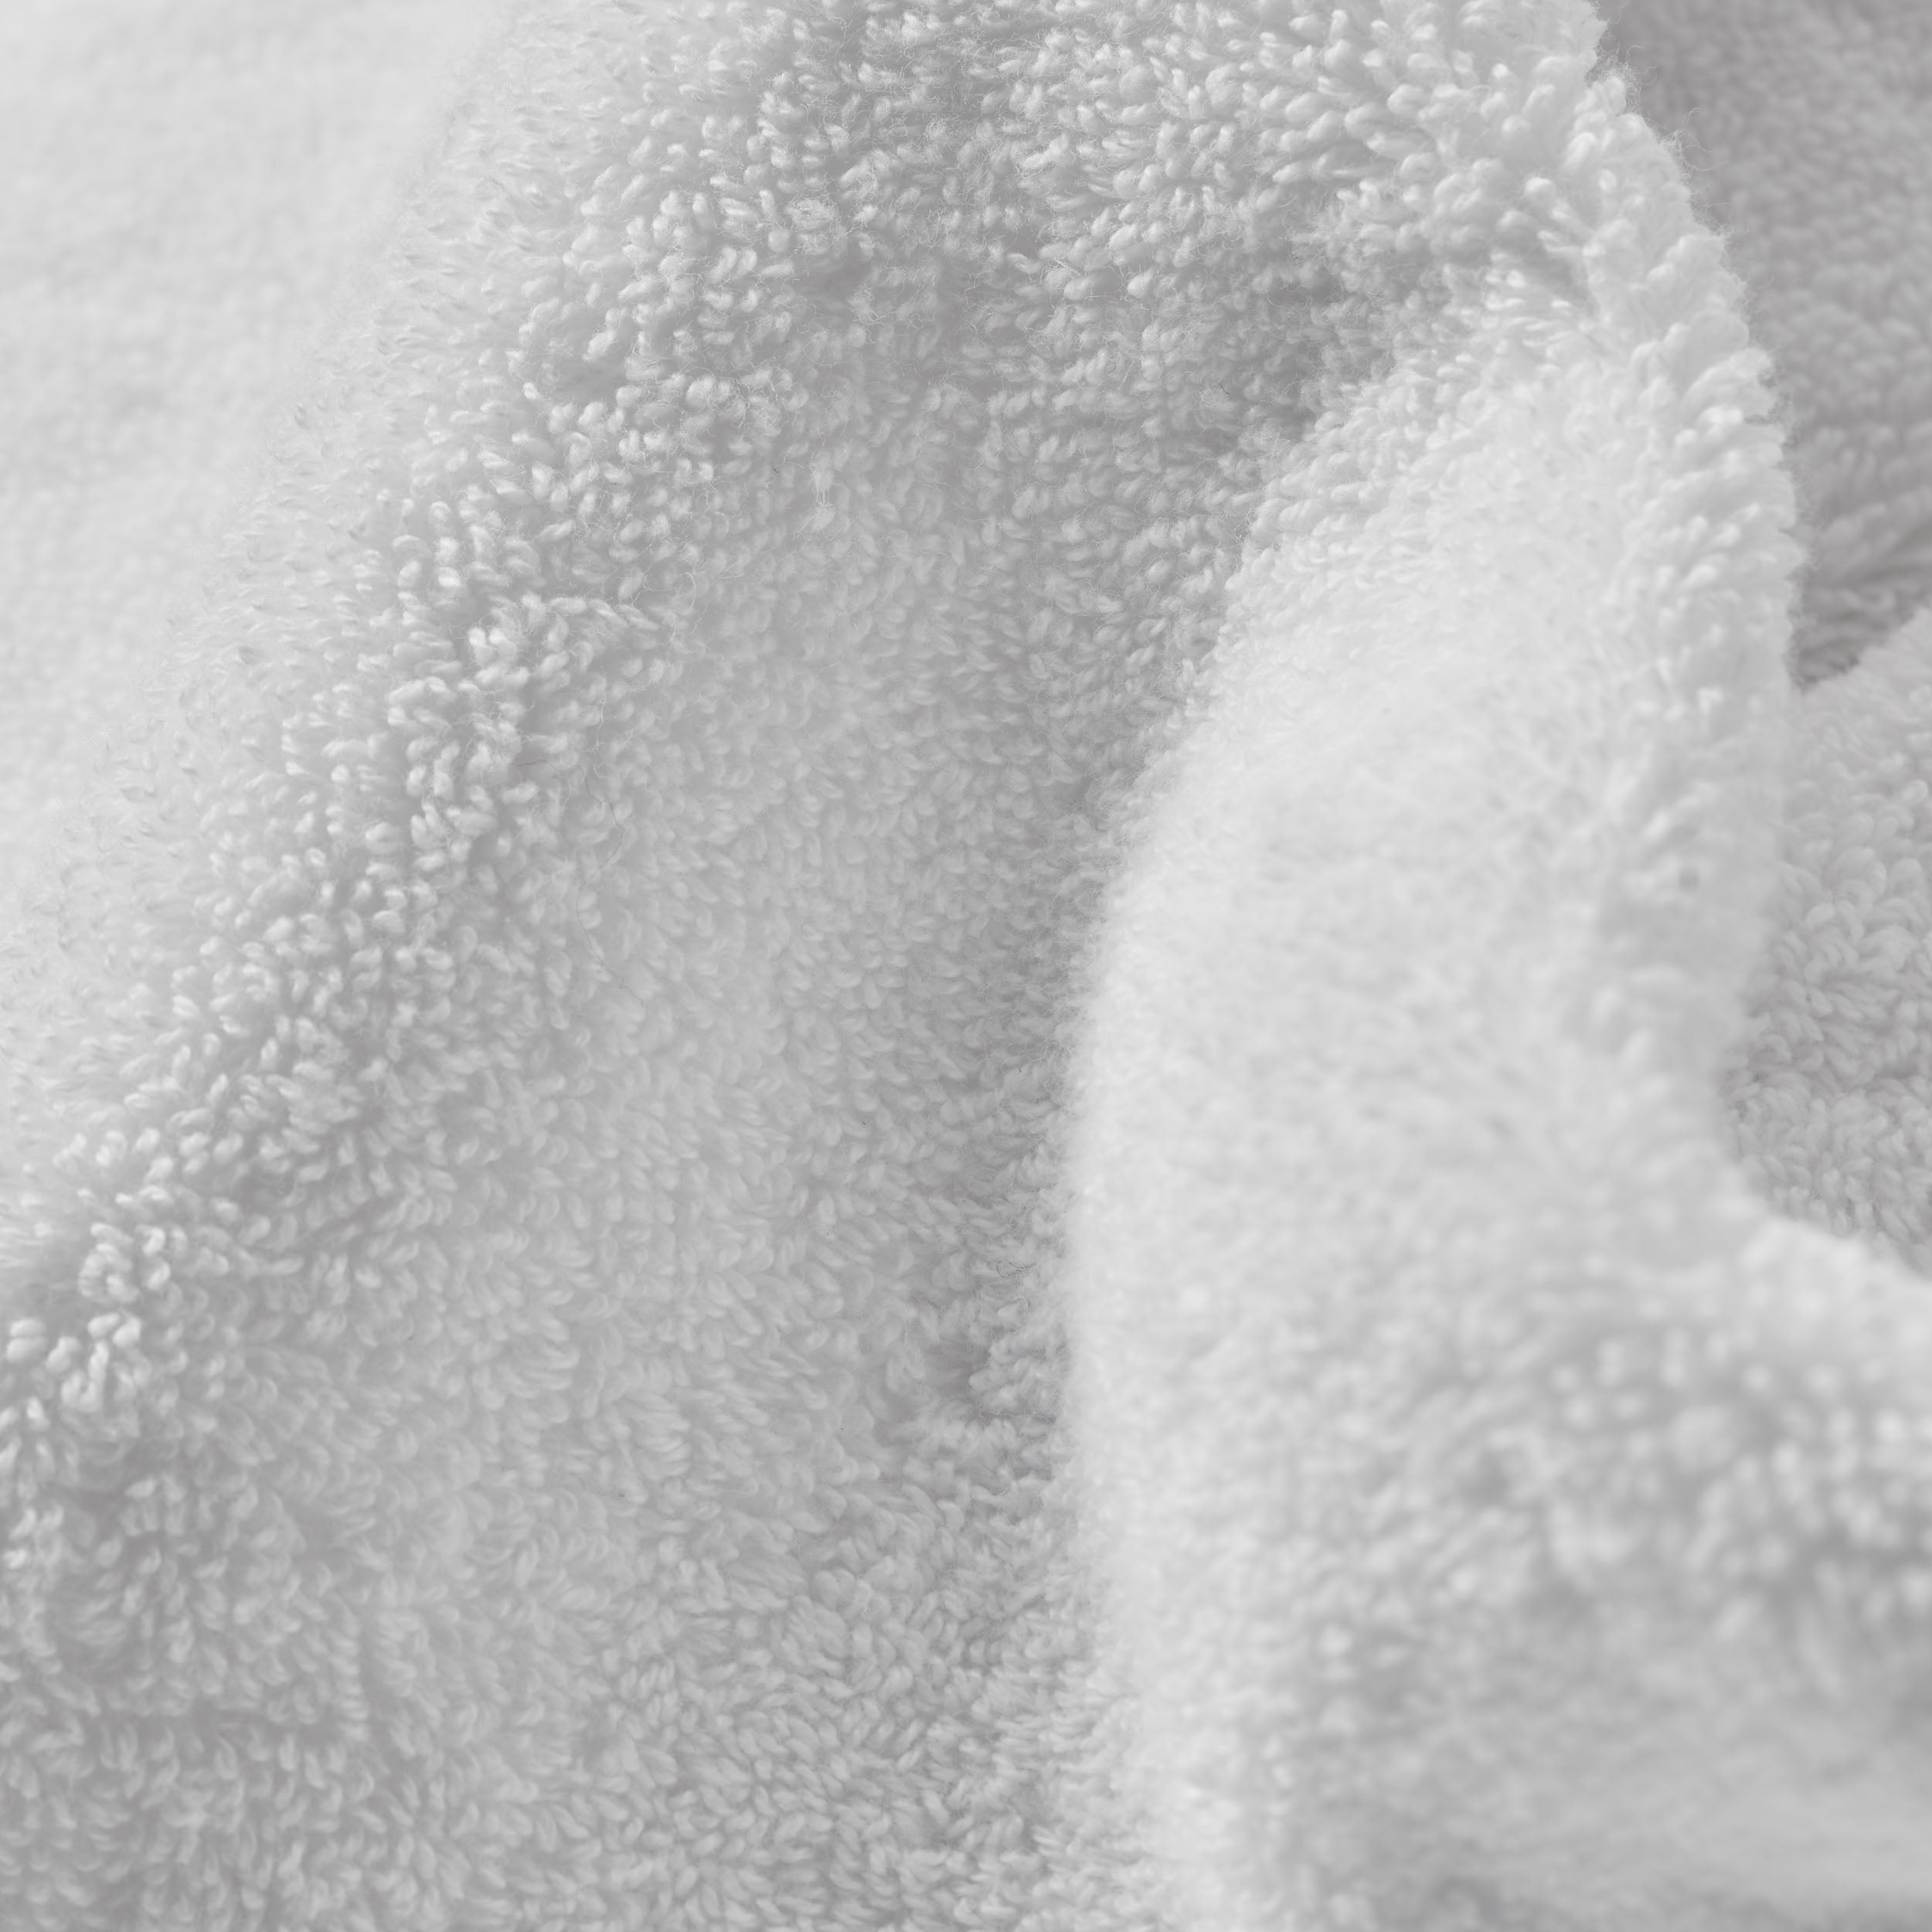 Signature Robe Terry / X-Small / PROSSIONI® White, Signature Robe Terry / Small / PROSSIONI® White, Signature Robe Terry / Medium / PROSSIONI® White, Signature Robe Terry / Large / PROSSIONI® White, Signature Robe Terry / X-Large / PROSSIONI® White